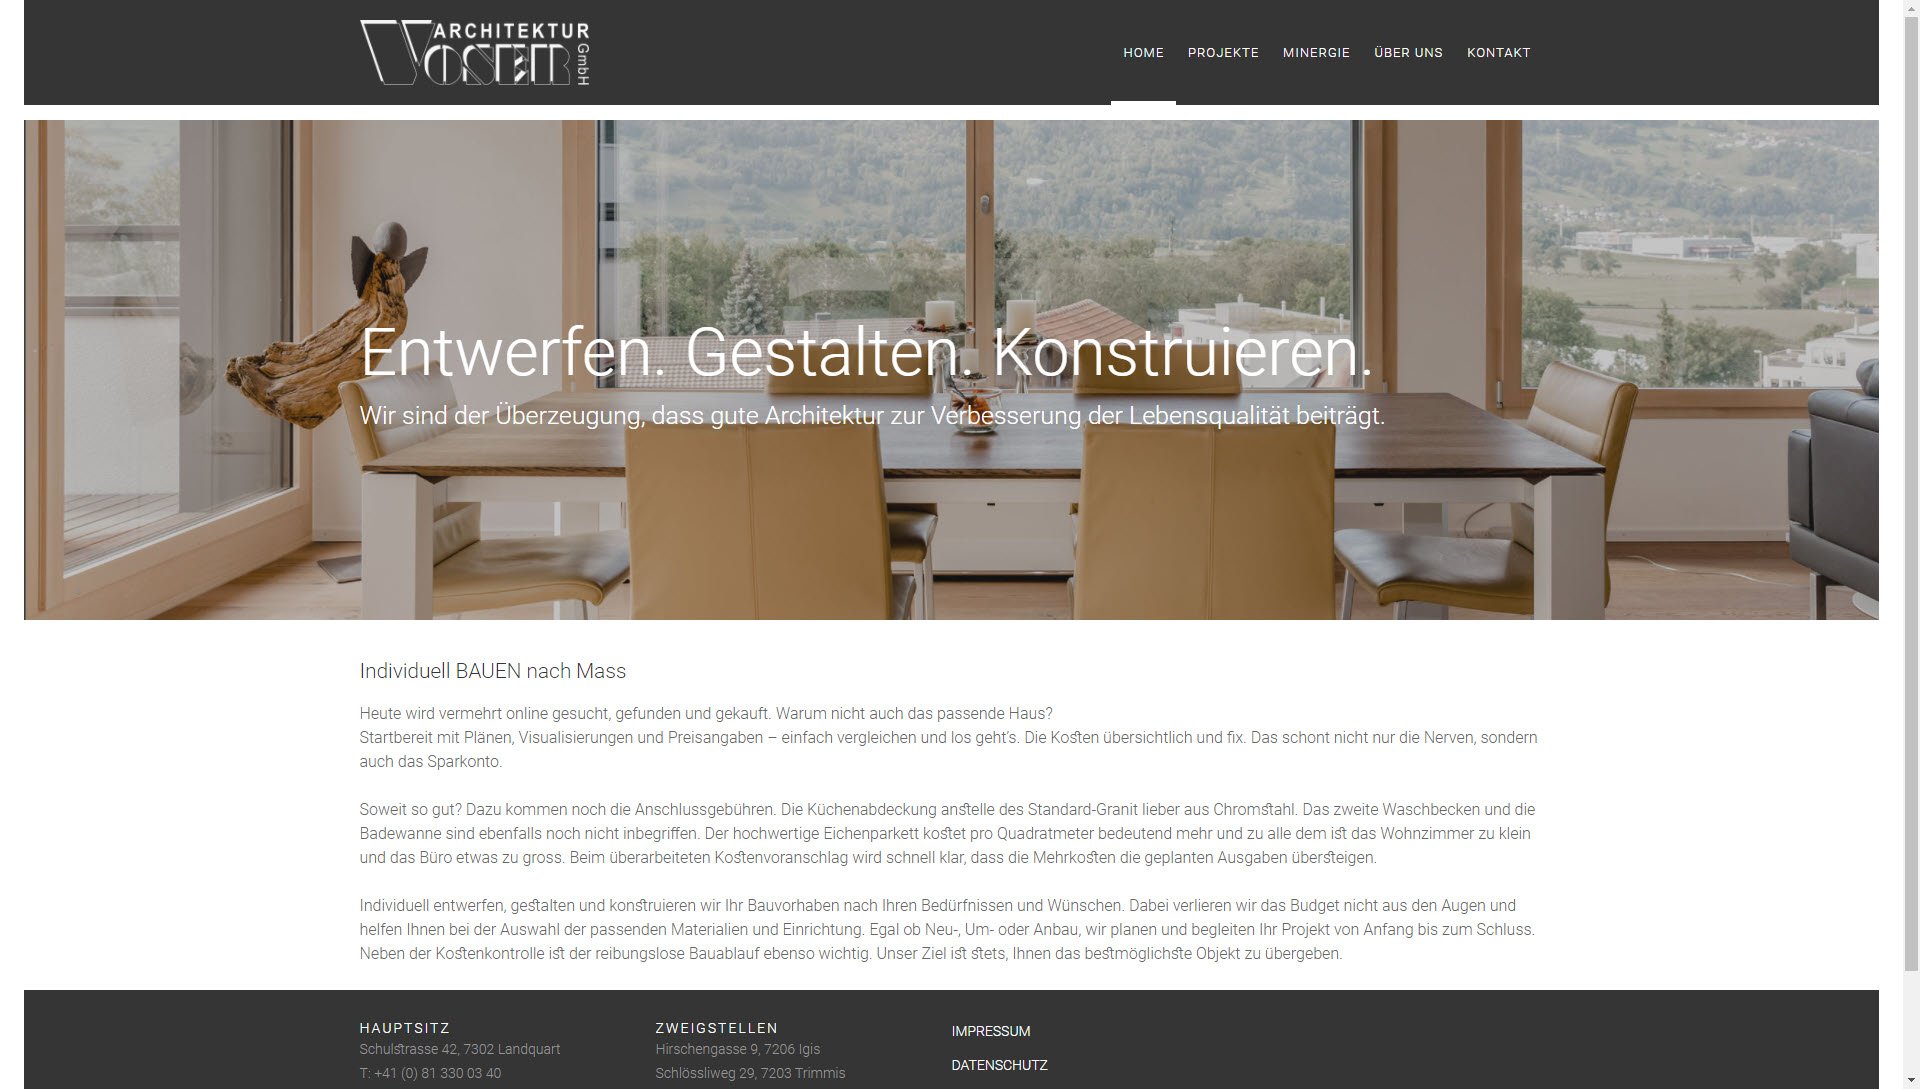 Voser Architektur GmbH